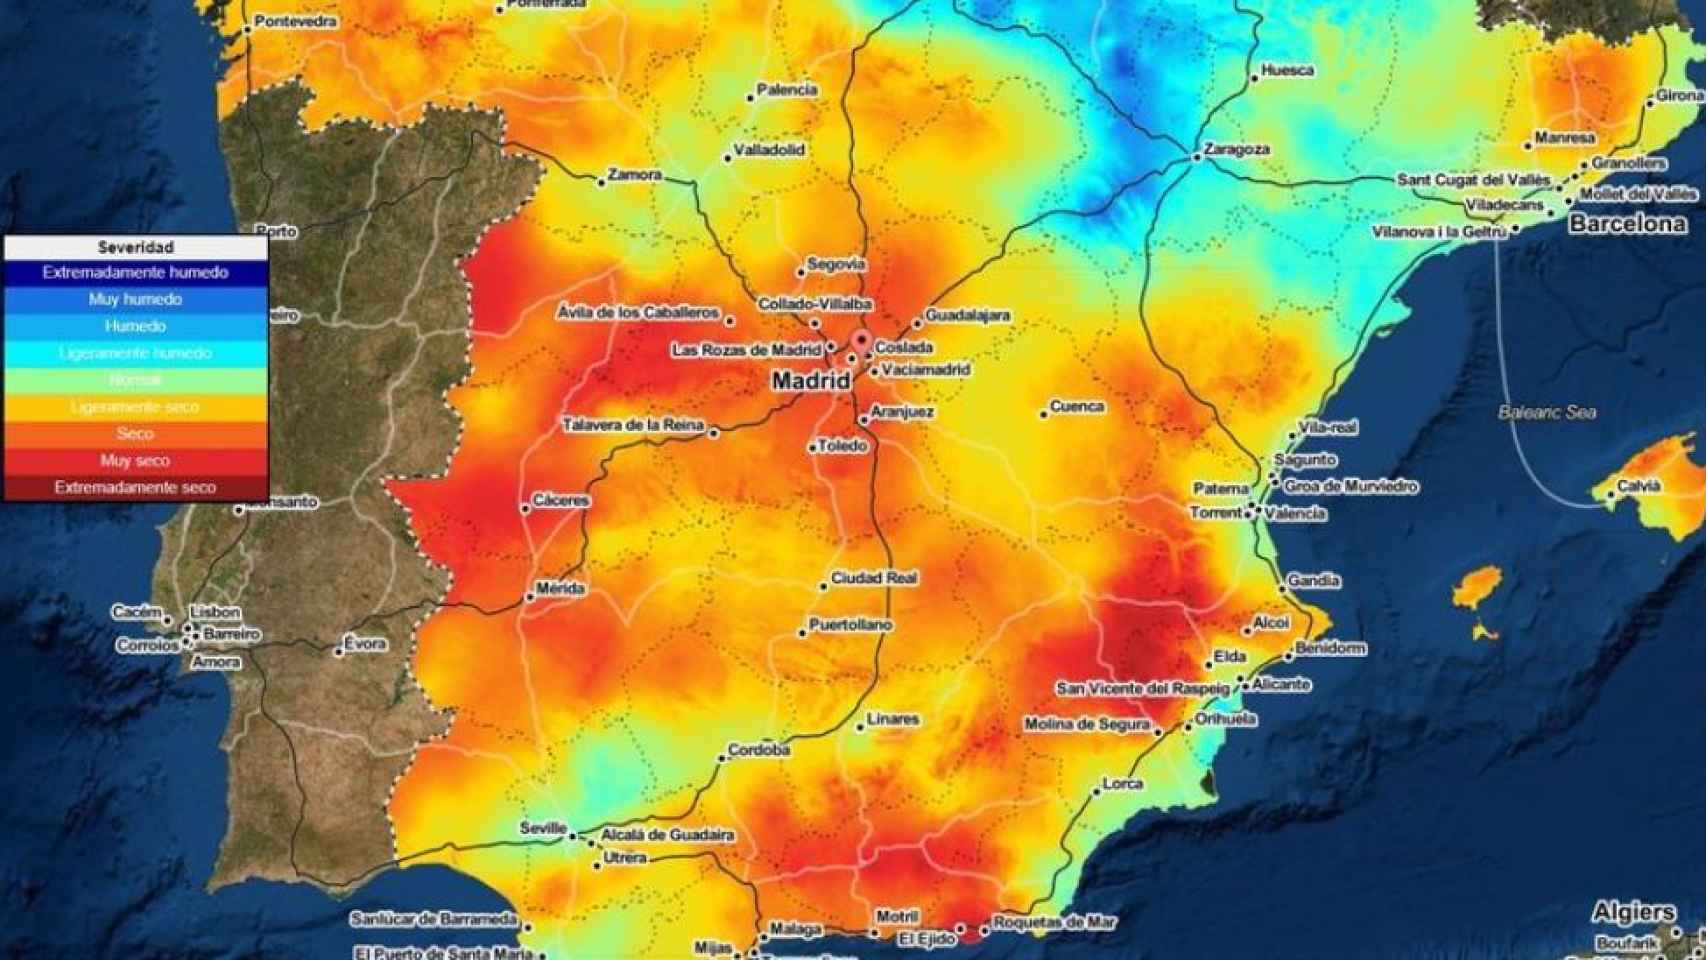 El SPEI muestra la severidad de la sequía meteorológica a partir de la precipitaciín y la demanda de agua por parte de la atmósfera. (Imagen: Meteored)